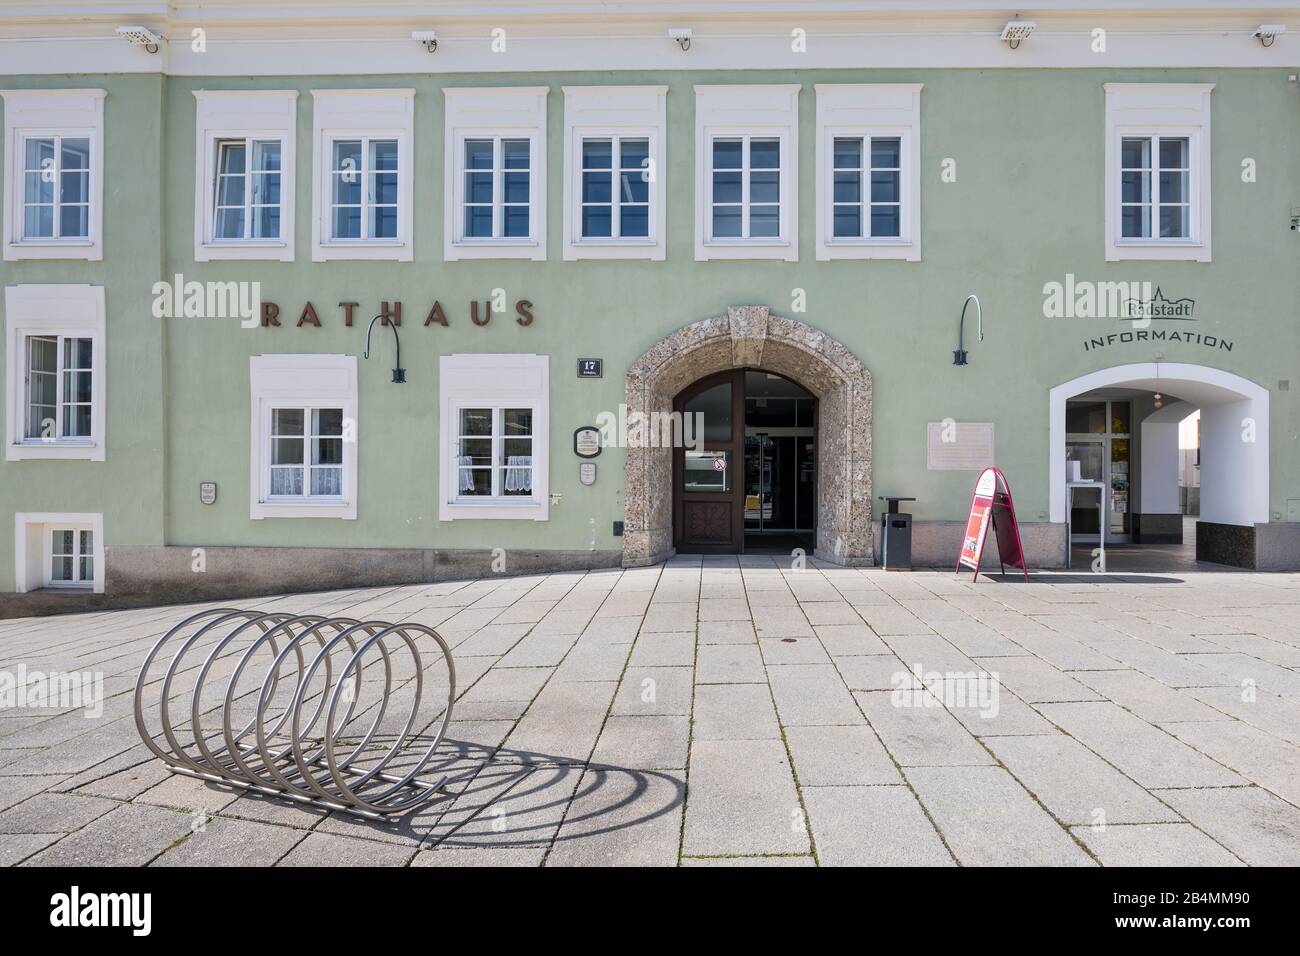 Rathaus und Informationsstelle am Stadtplatz, Radstadt, Pongau, Land Salzburg, Österreich, Oktober 2019 Stock Photo